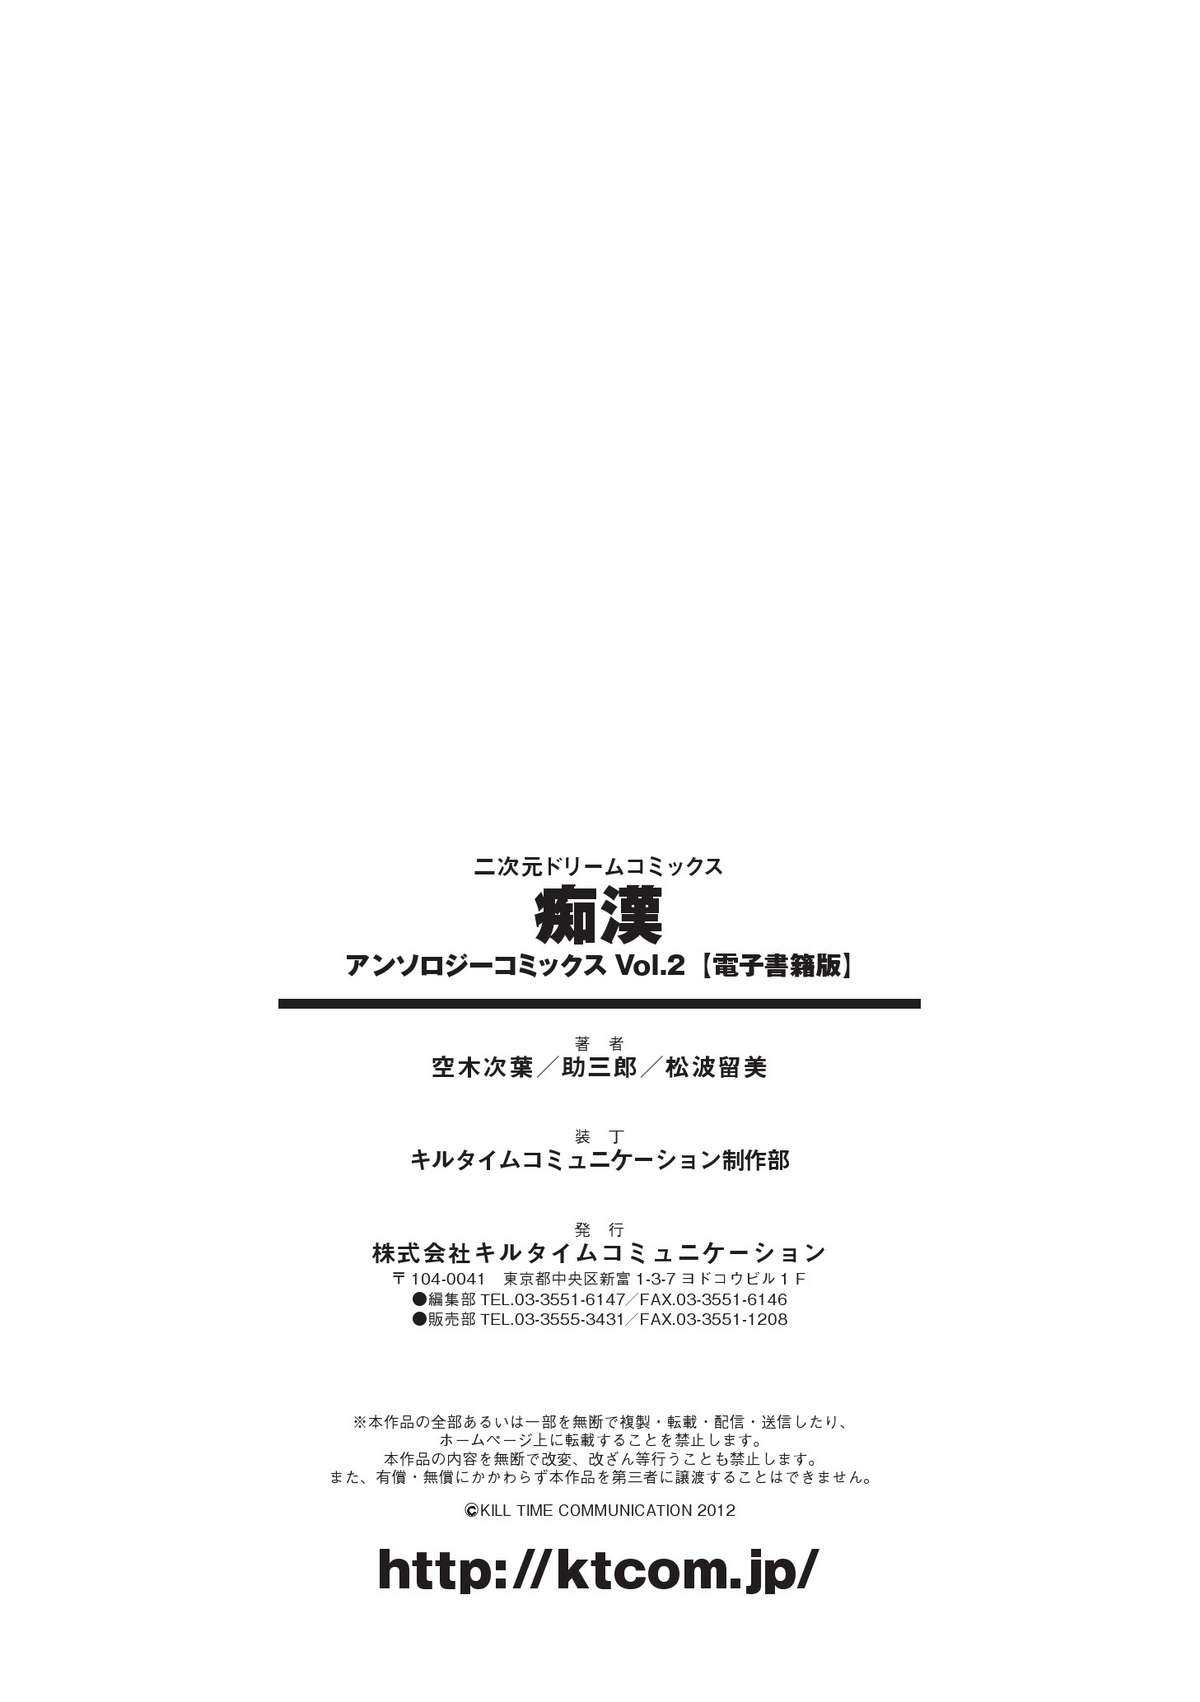 [Anthology] Chikan Vol.2 Digital [アンソロジー] 痴漢 アンソロジーコミックス Vol.2 デジタル版